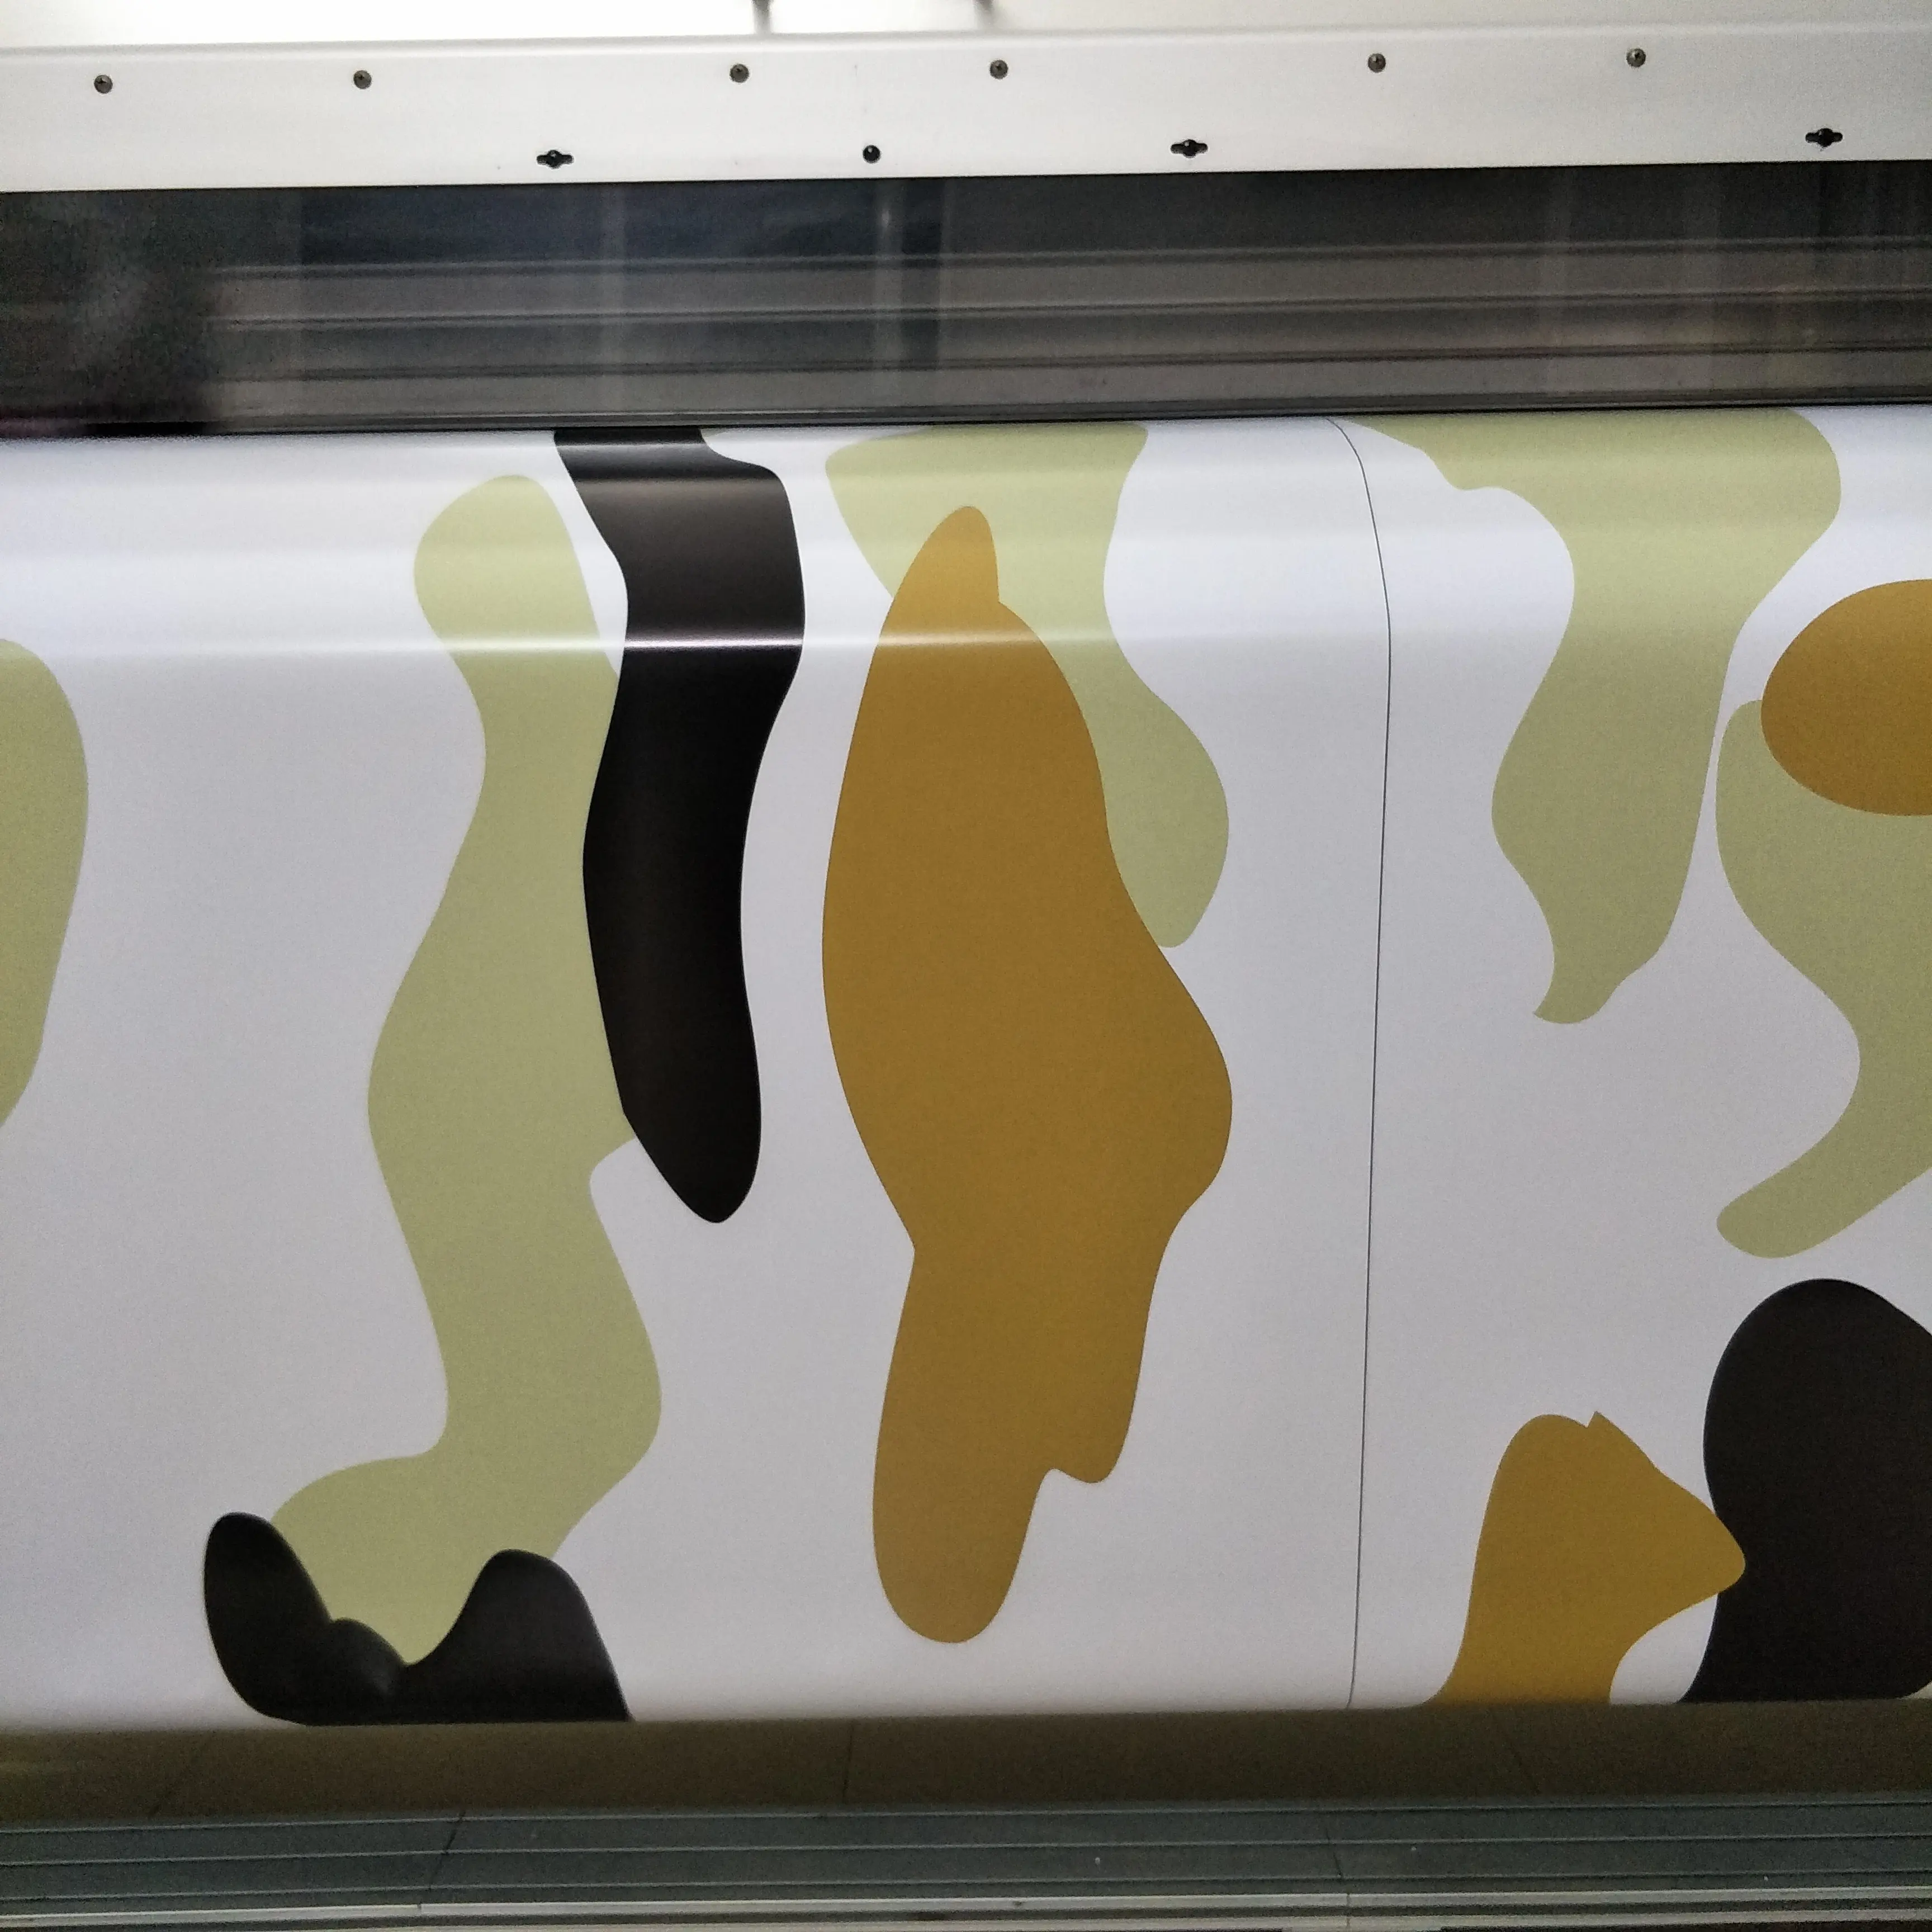 OEM 세관 새로운 인쇄 광택 매트 그래픽 디자인 자동차 랩 위장 비닐 스티커 카모 차량 자동 포장 필름